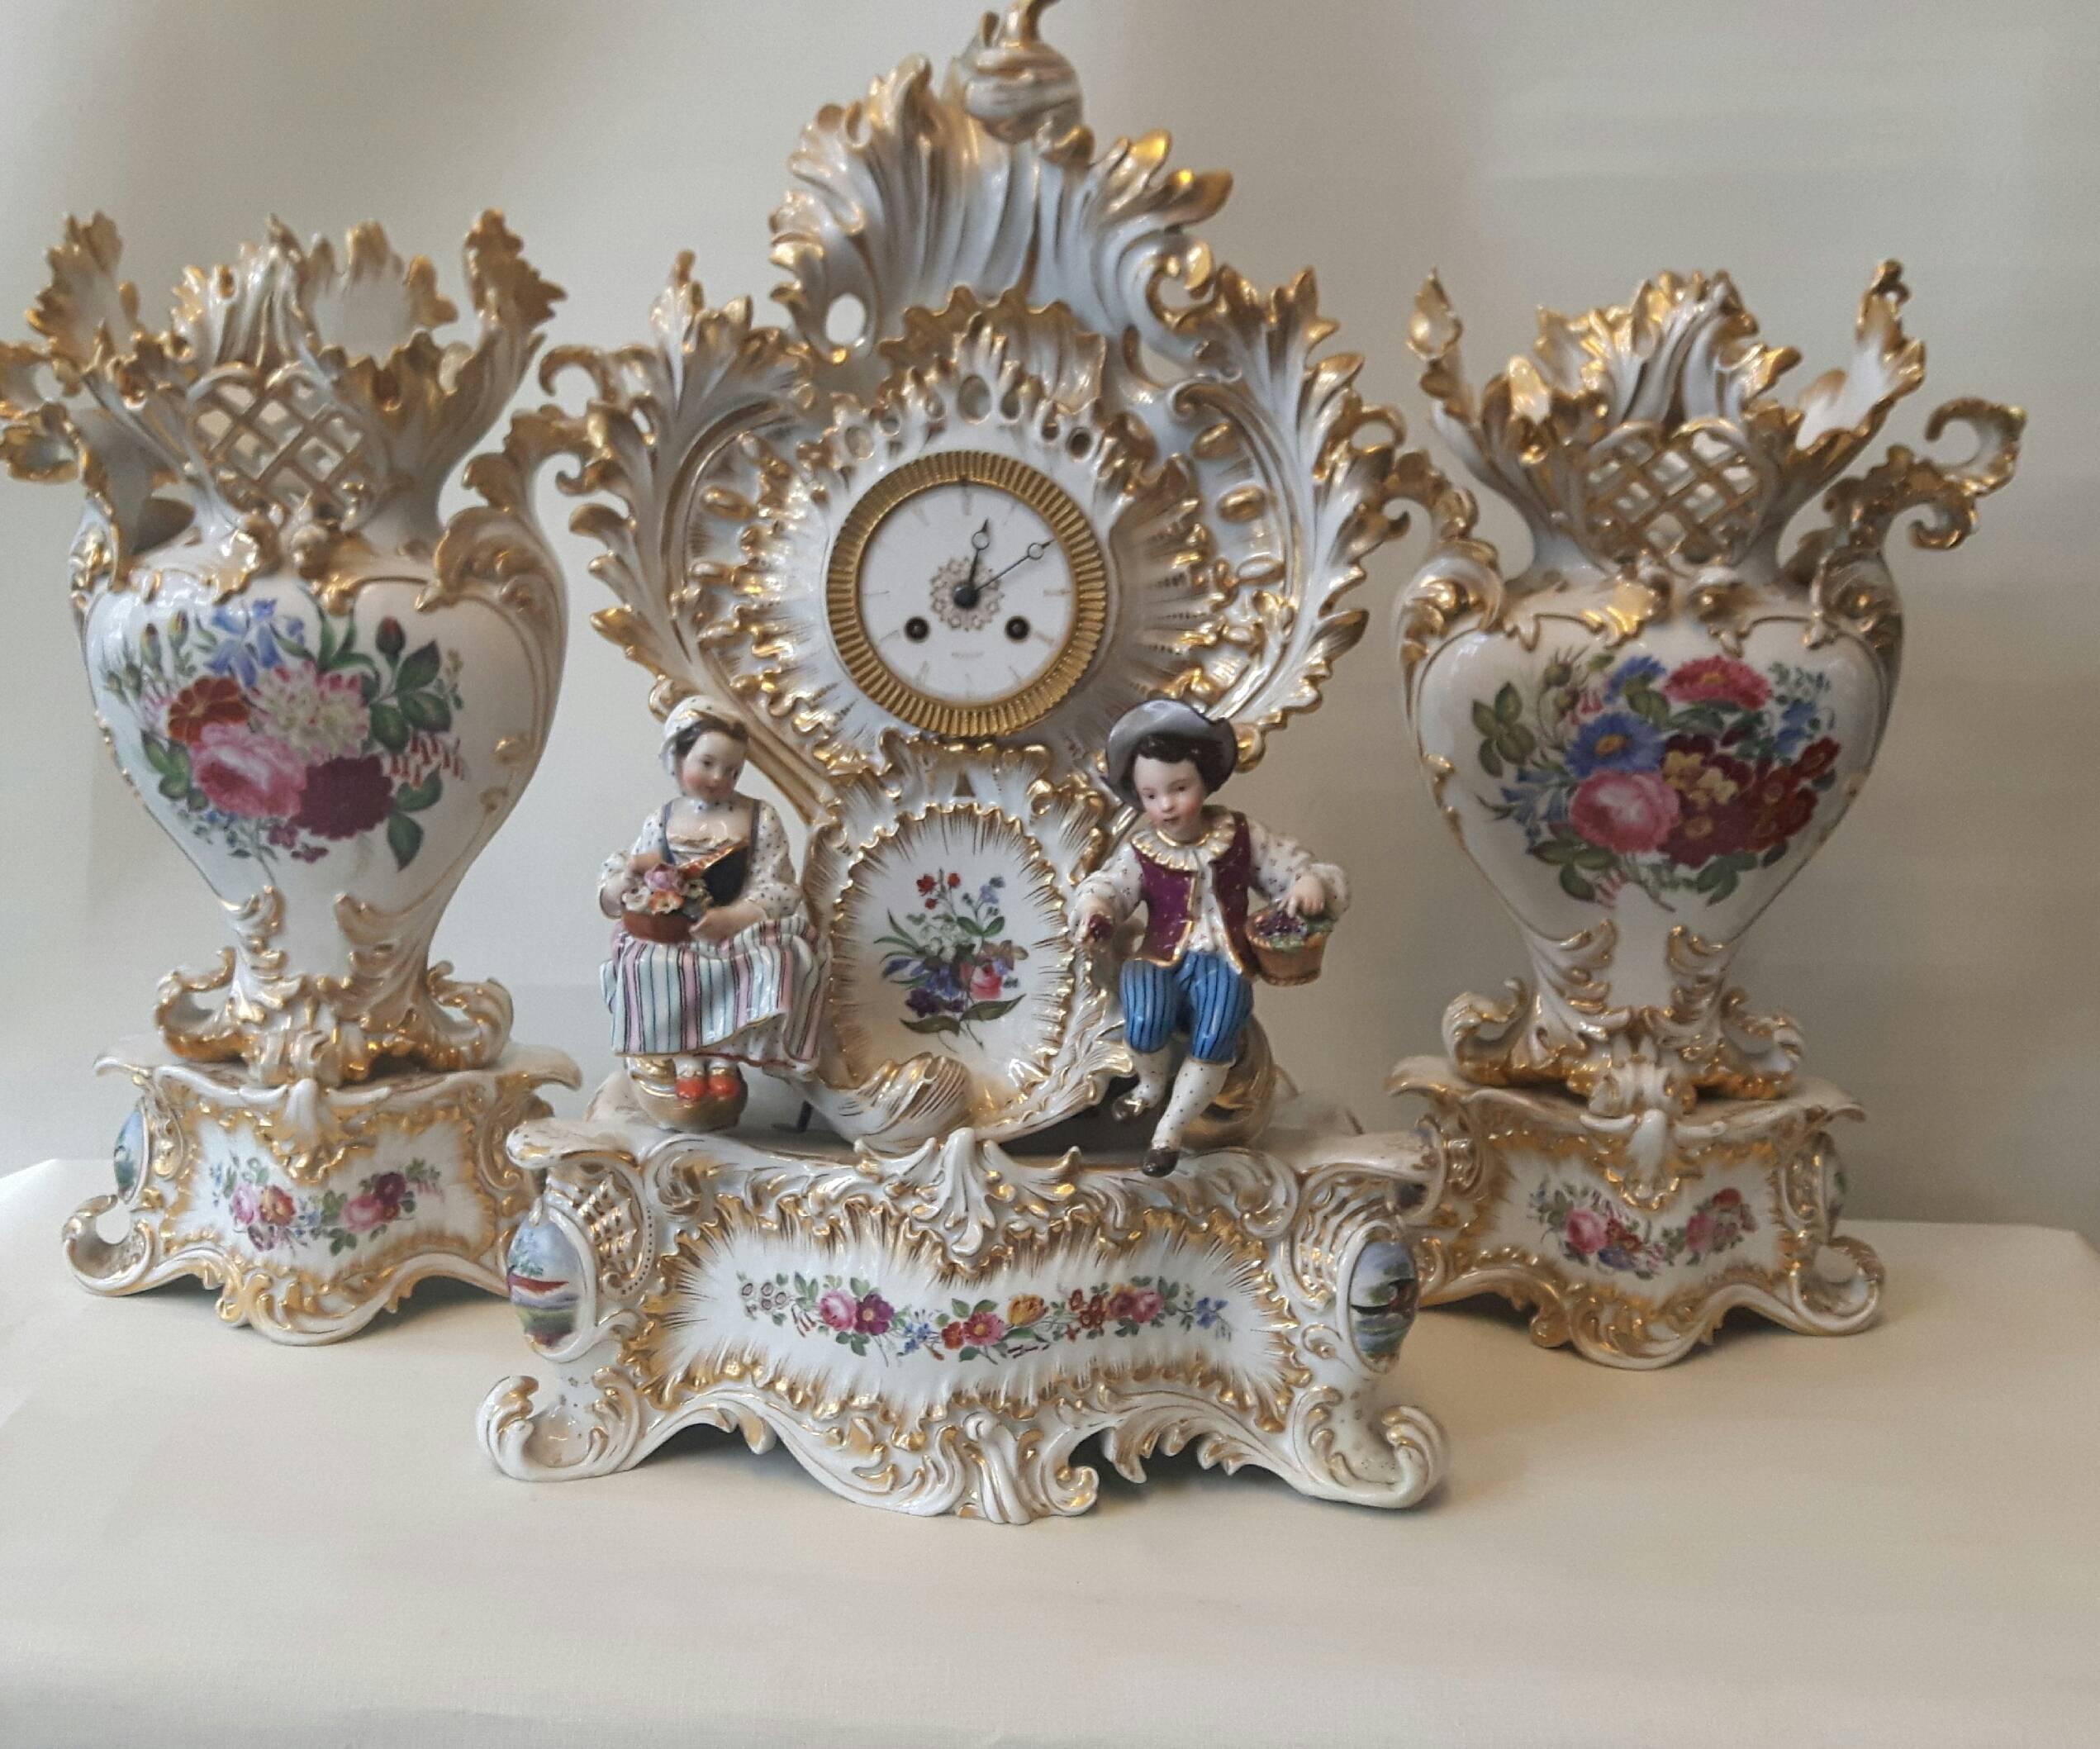 Élégante garniture rococo de Jacob Petit, Paris, vers 1860. L'horloge est minutieusement peinte à la main avec des cartouches de fleurs, tout comme les vases assortis, et une paire de figurines de style Meissen, représentant des jardiniers, orne le